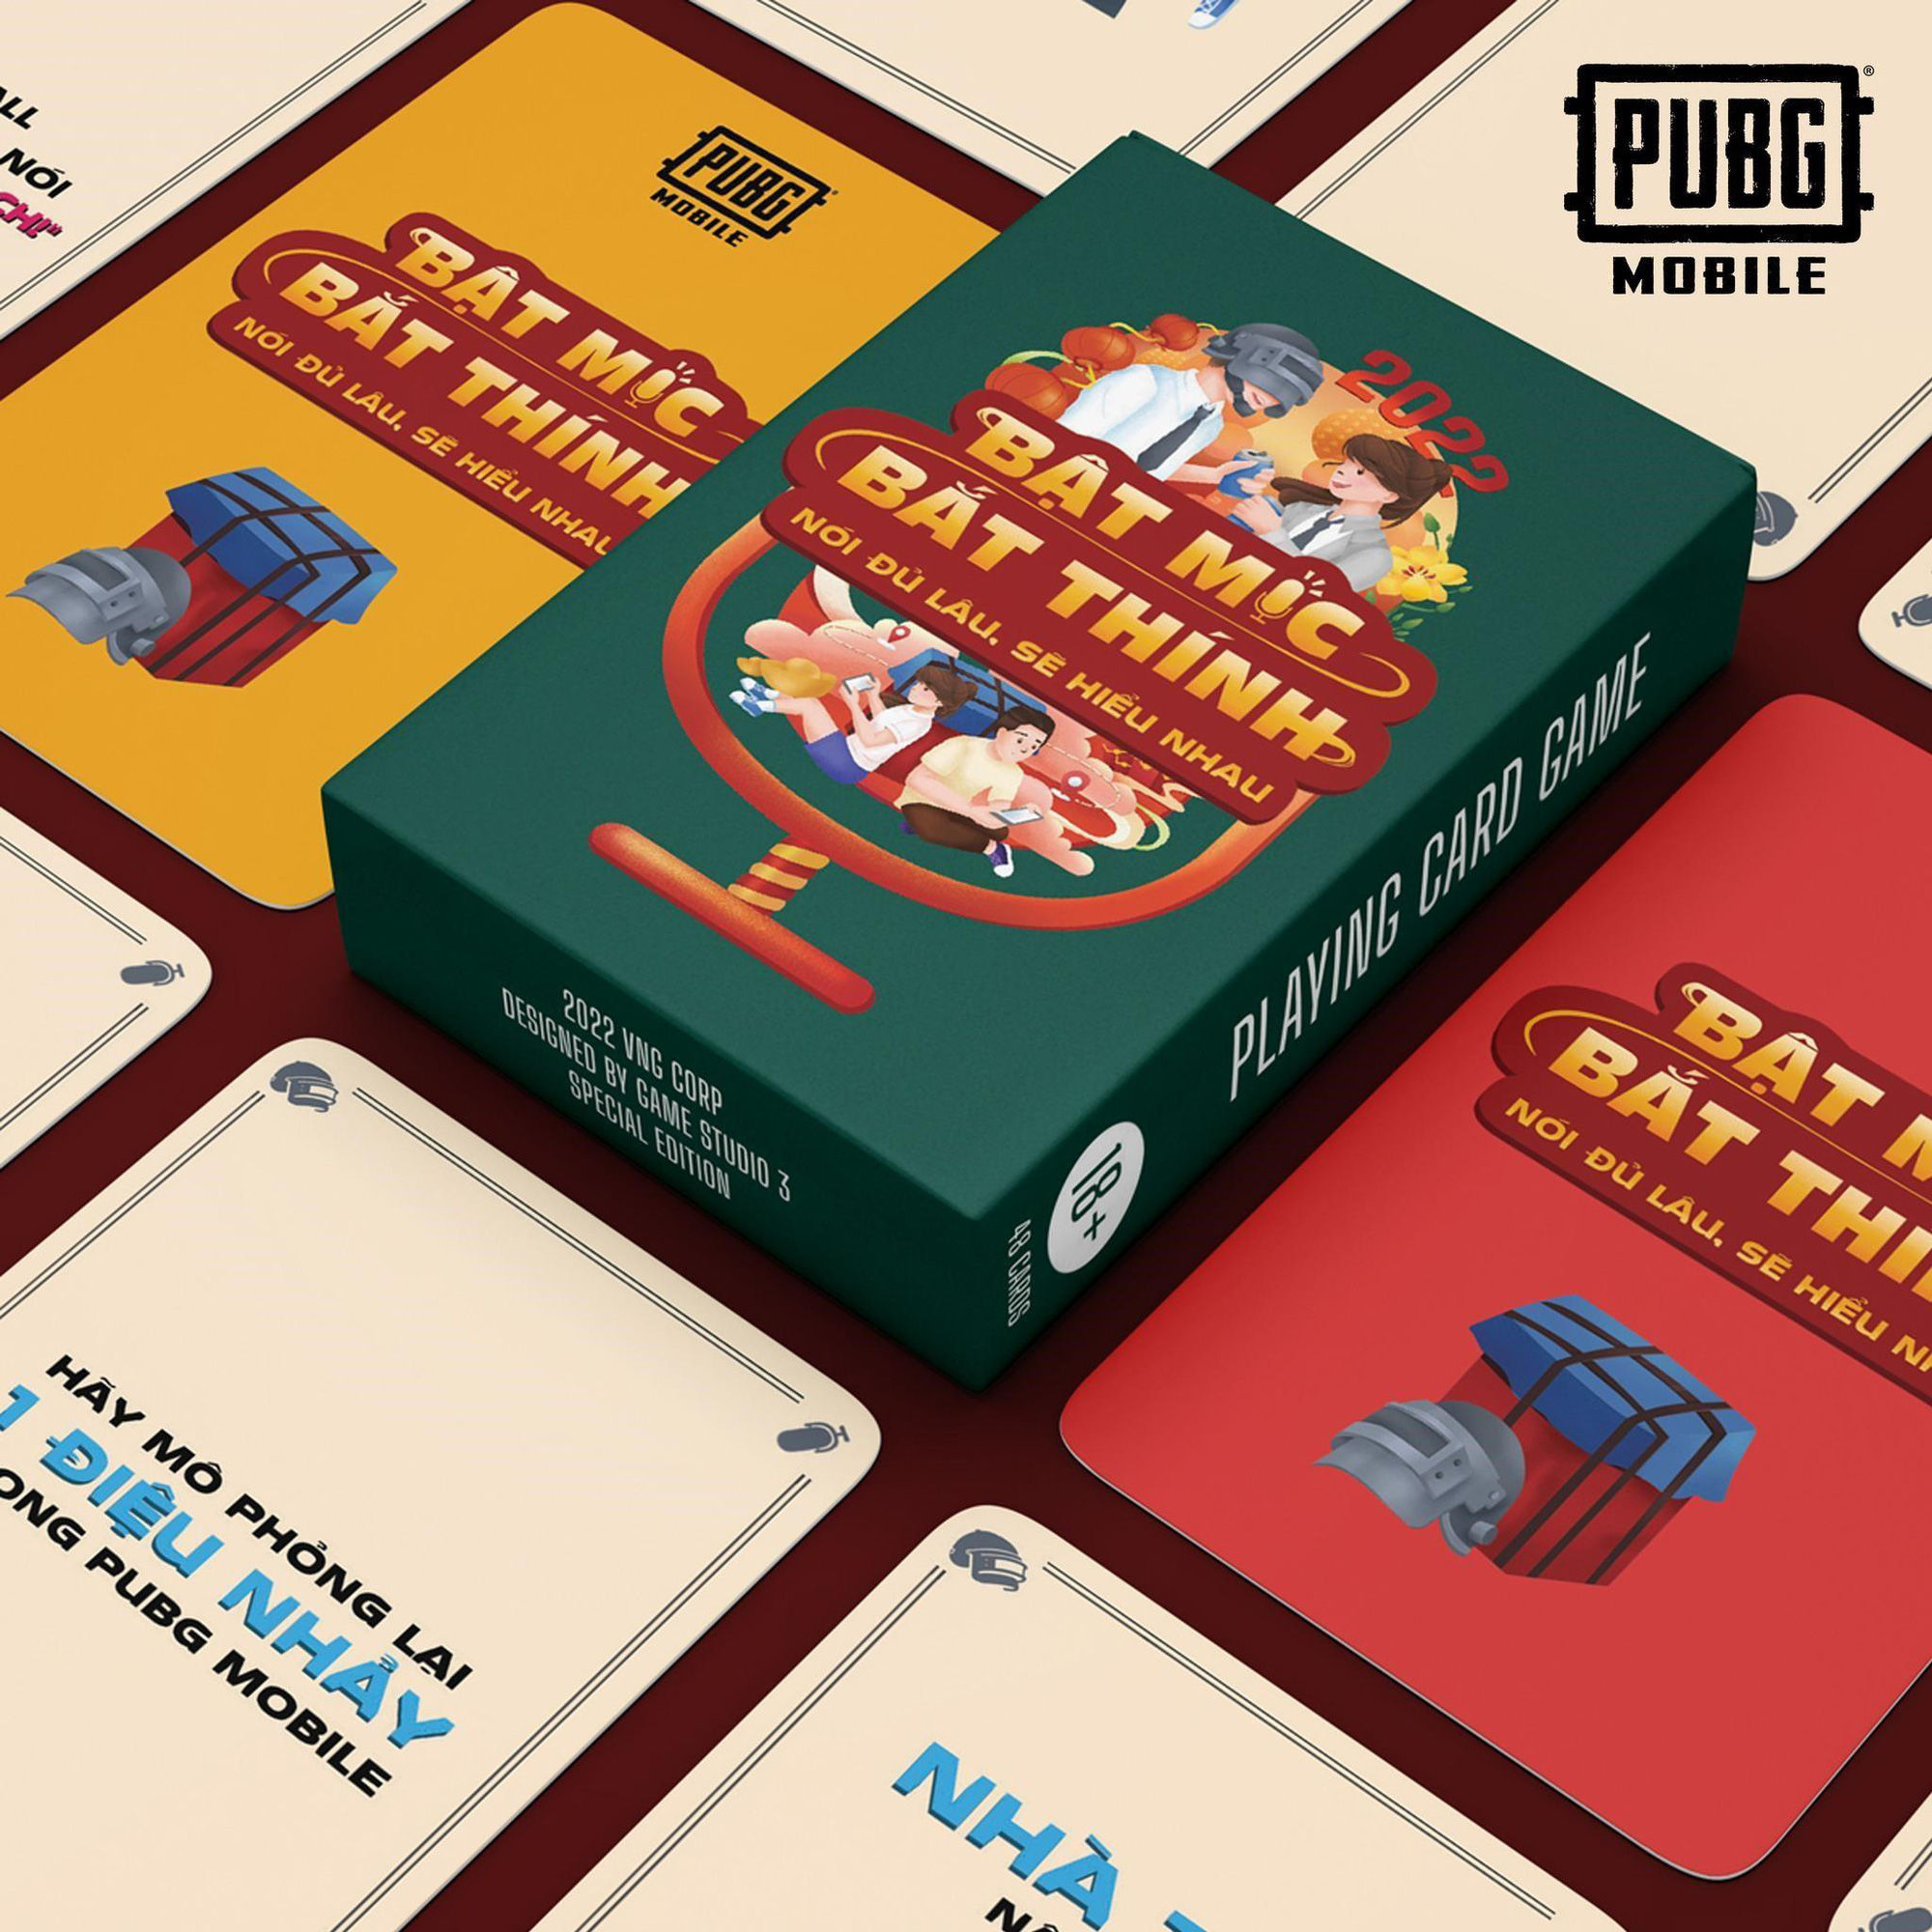 PUBG MOBILE ra mắt bộ boardgame đặc sắc, gây sốt giới trẻ trong dịp Tết Nhâm Dần - Ảnh 3.